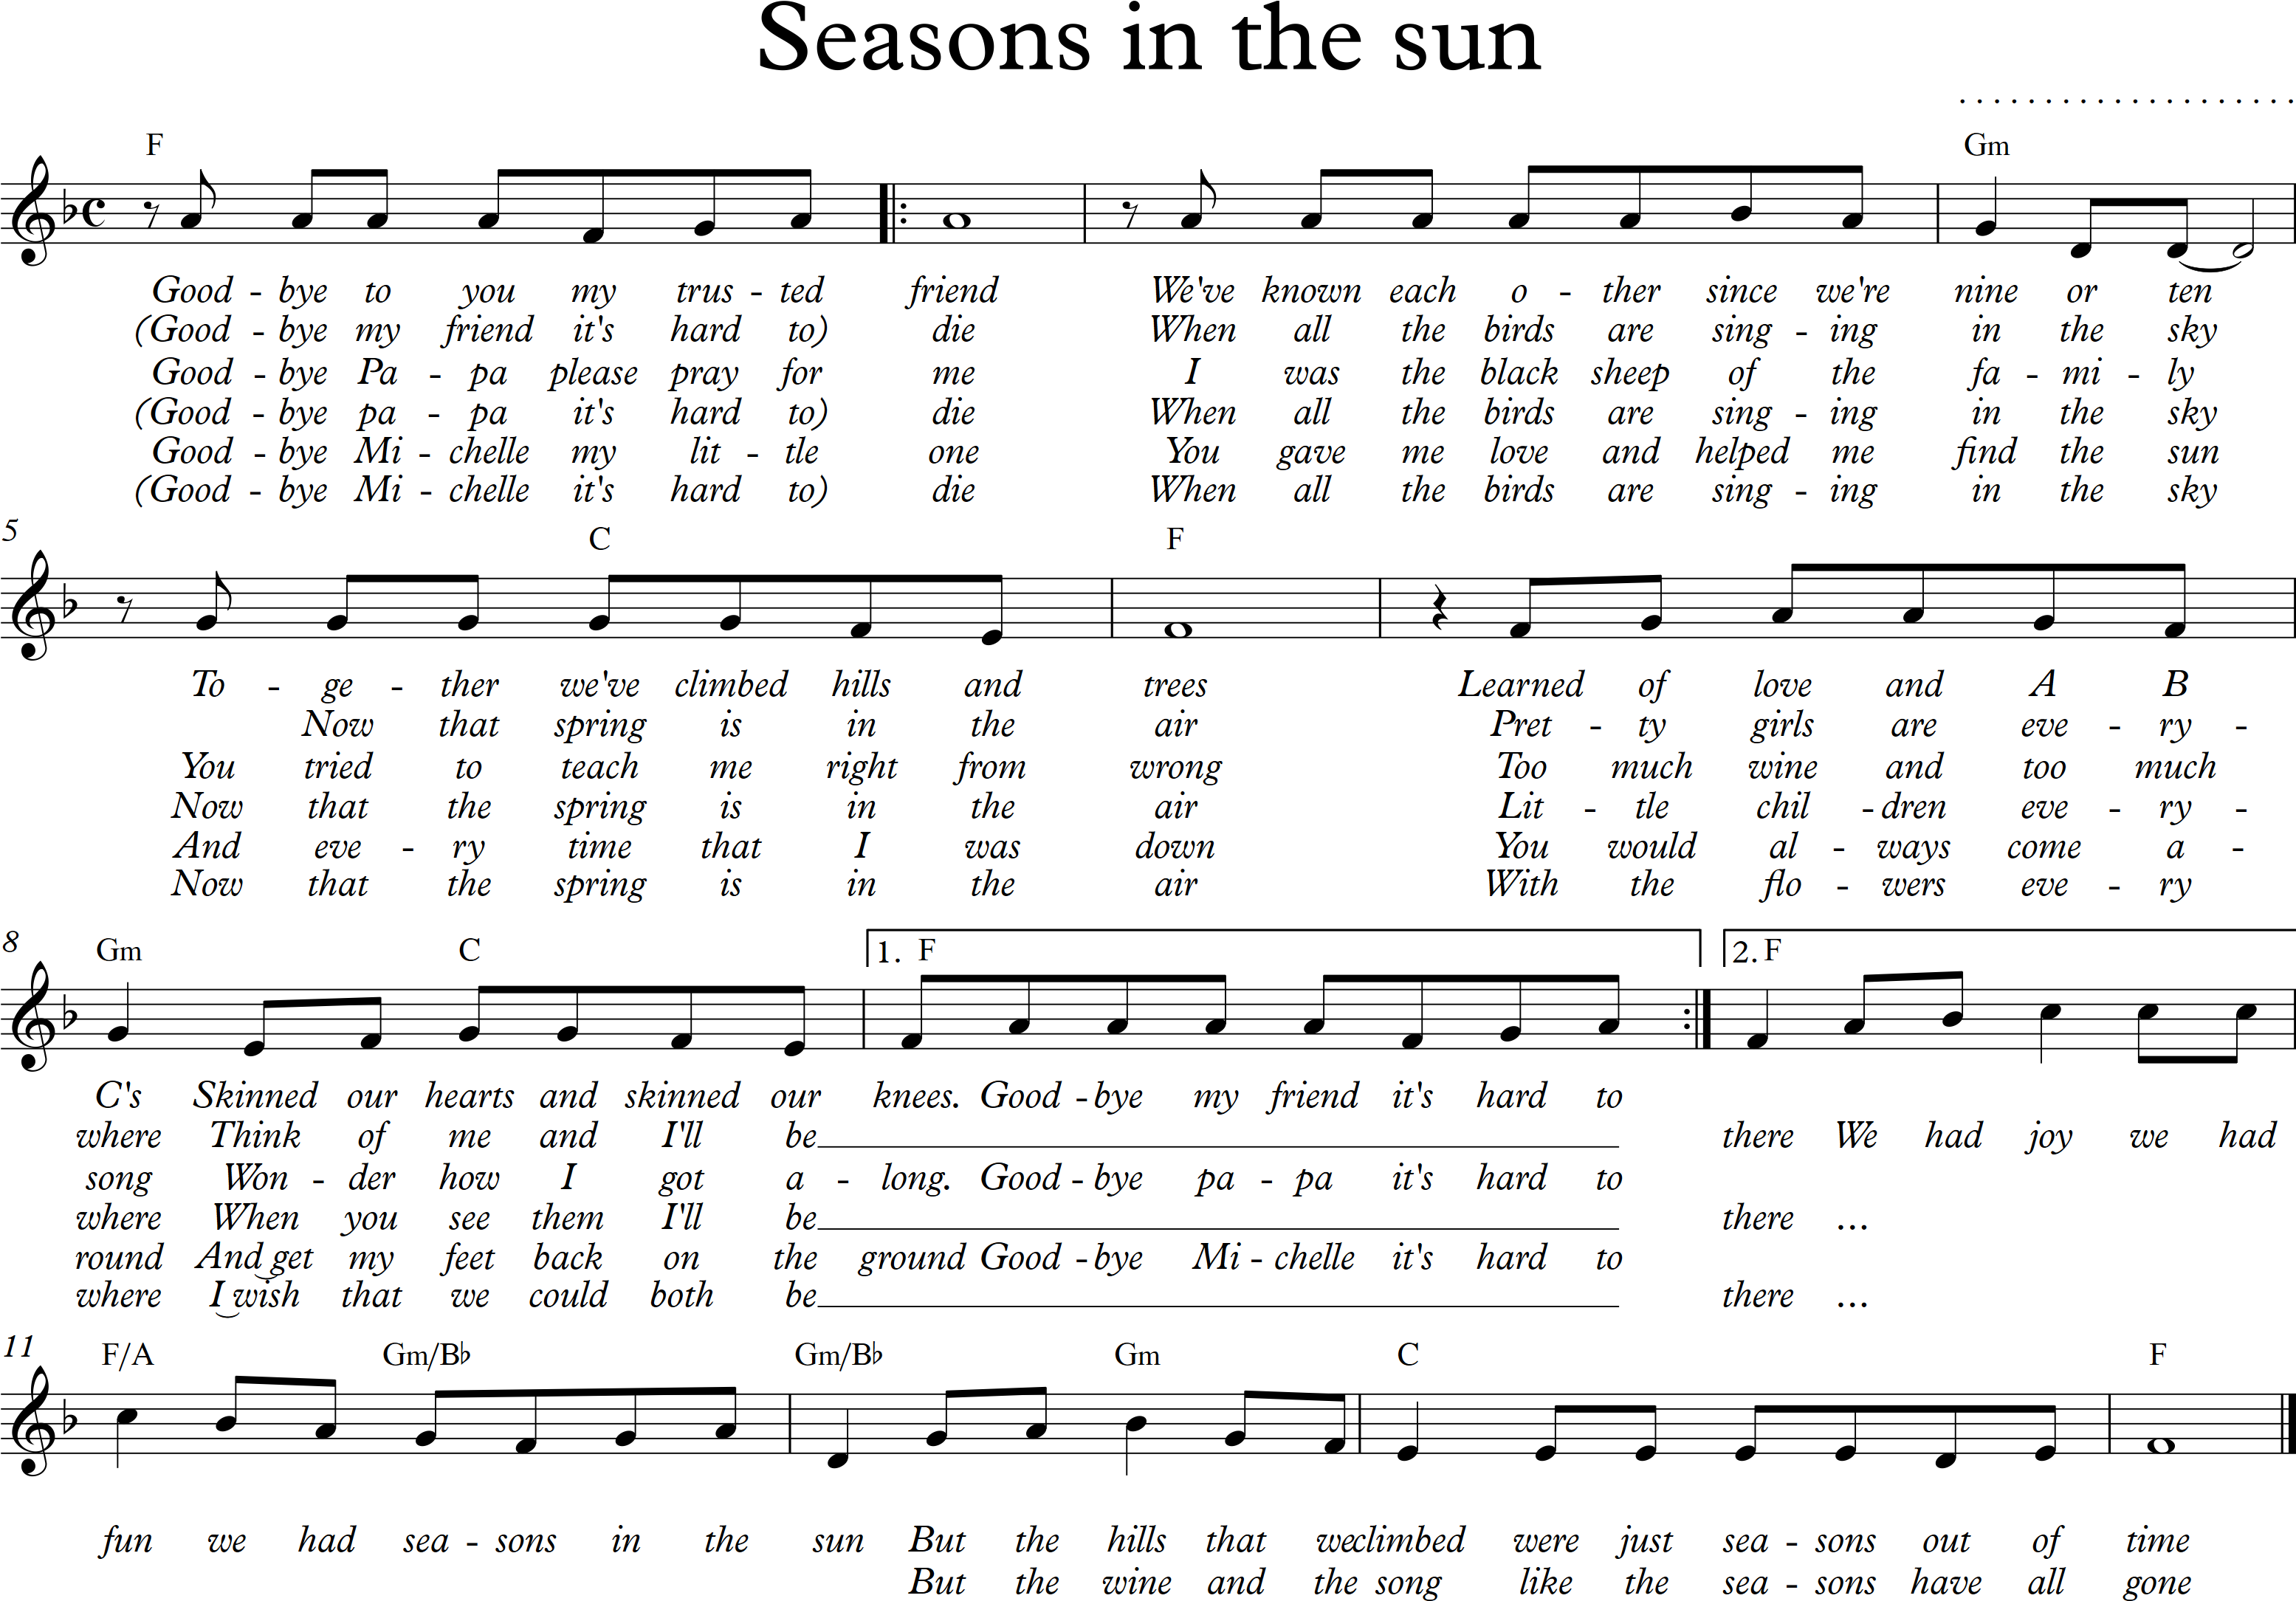 Seasons in the sun